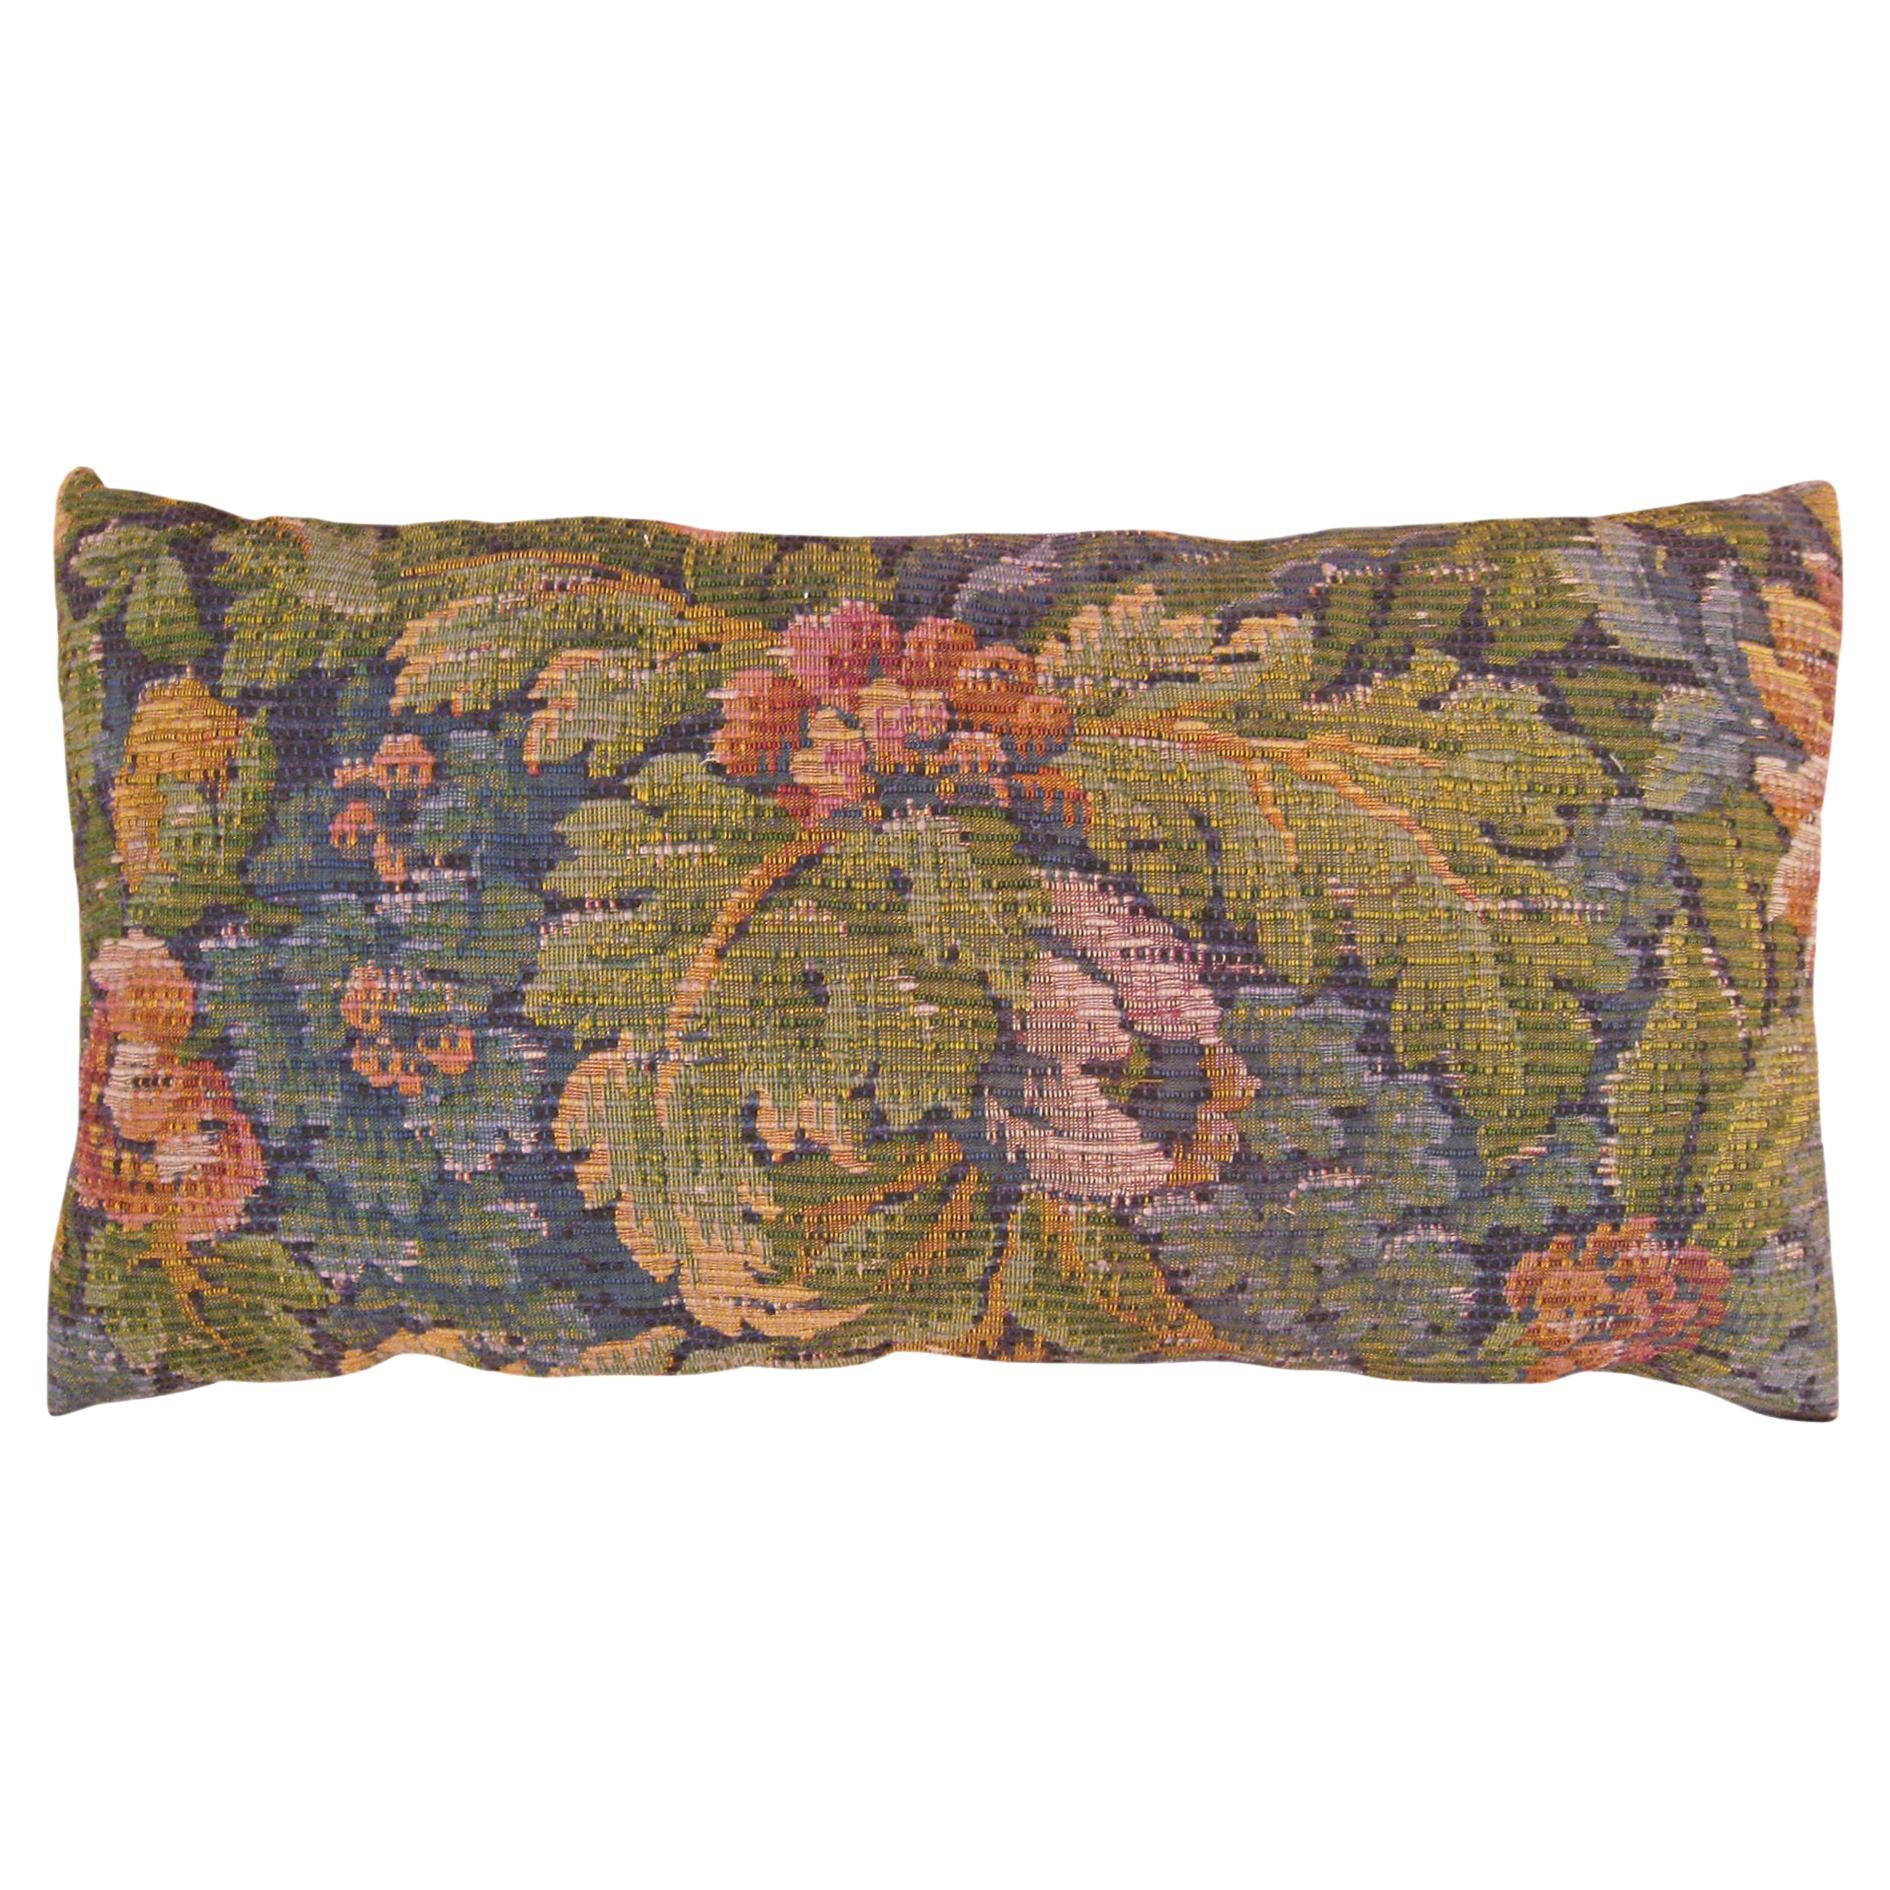 Dekoratives antikes Jacquard-Wandteppich mit floralen Elementen